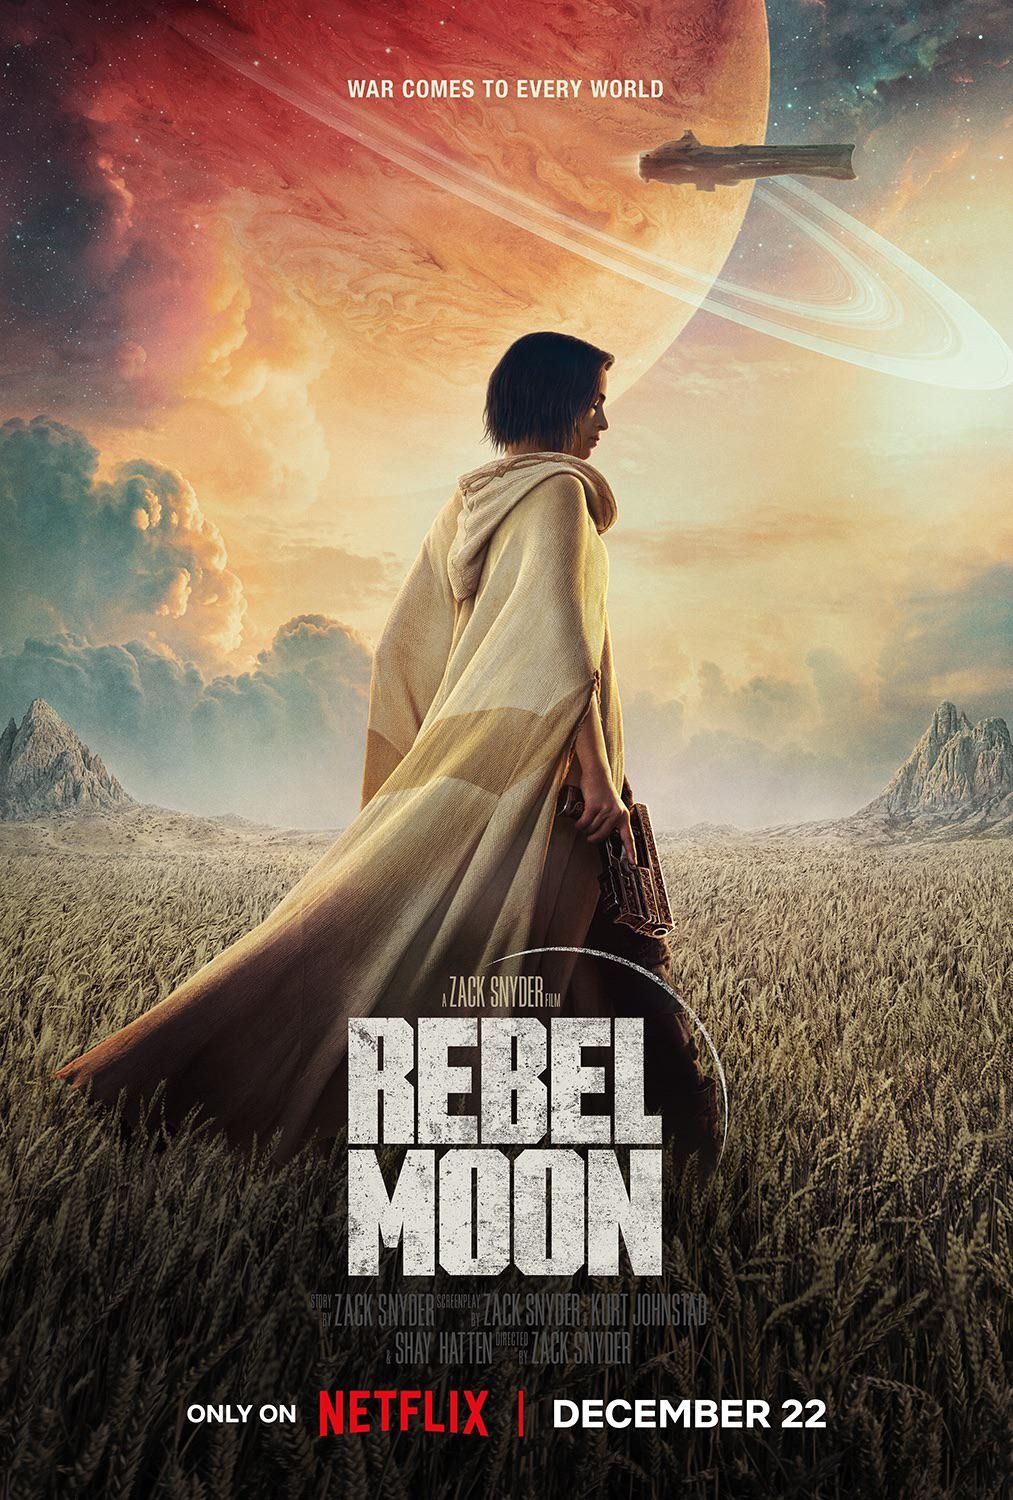 Rebel Moon, de Zack Snyder, estreia com 17% de aprovação no Rotten Tomatoes